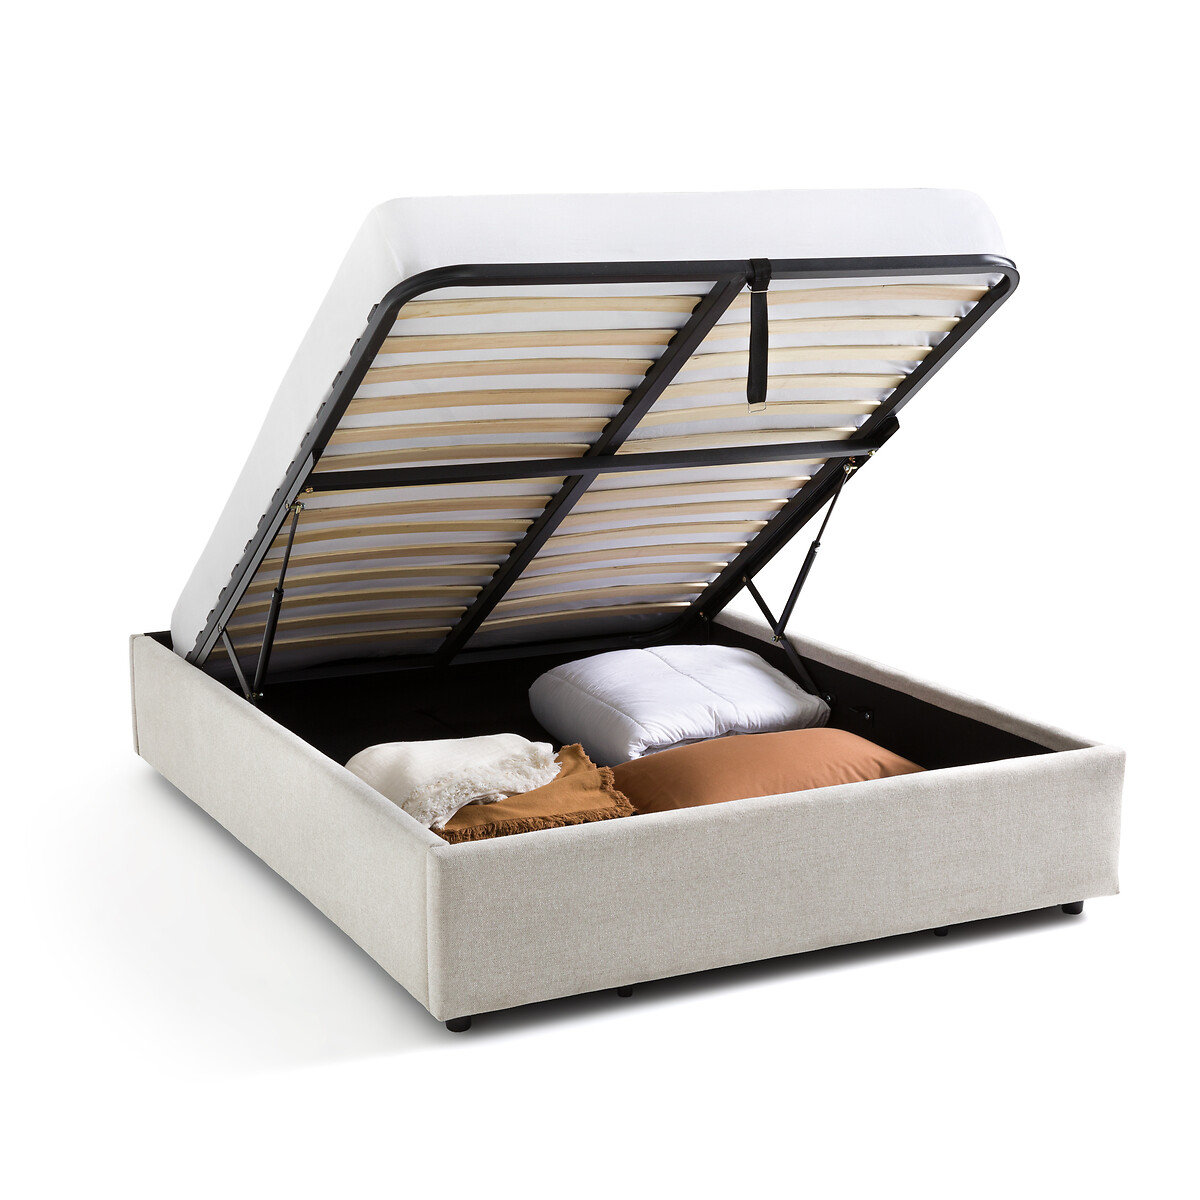 Кровать С реечным дном и ящиком внутри Papilla 180 x 200 см бежевый LaRedoute, размер 180 x 200 см - фото 3